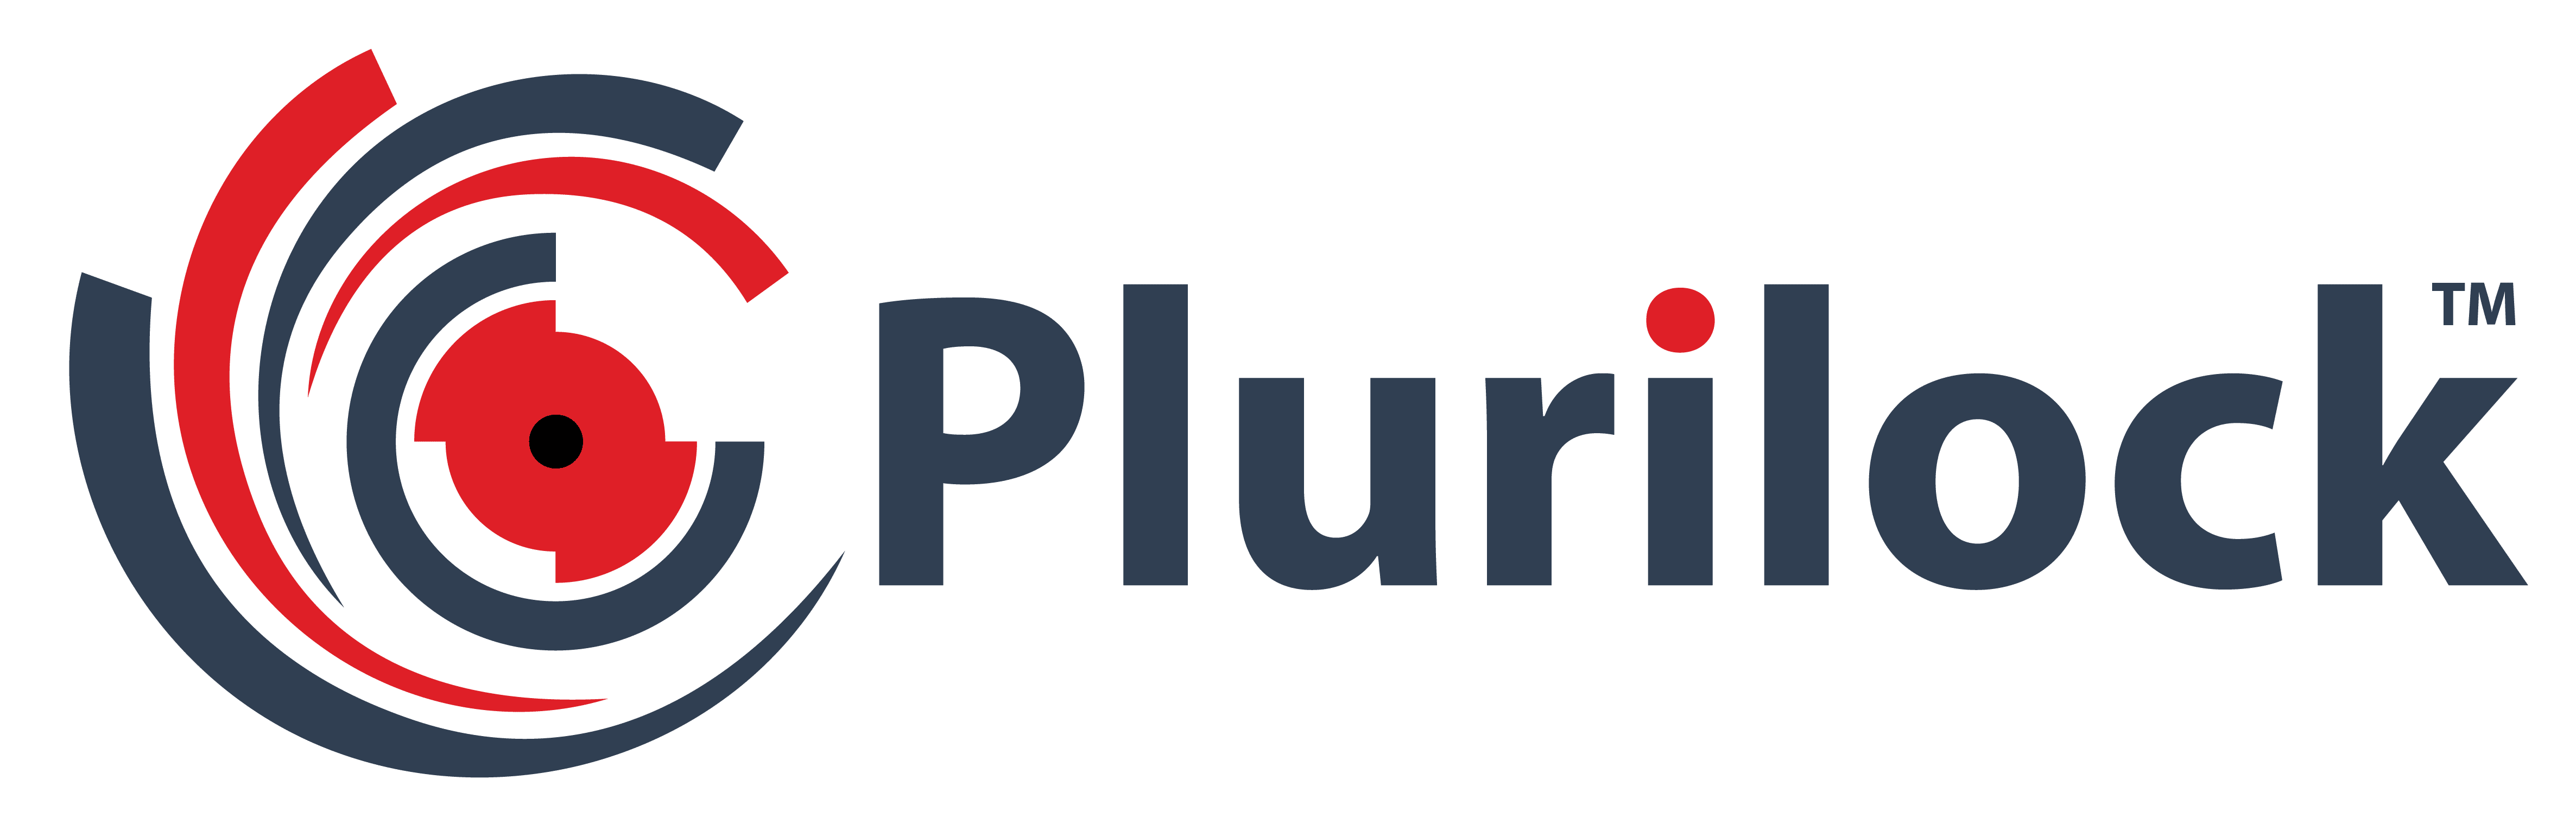 Plurilock Logo